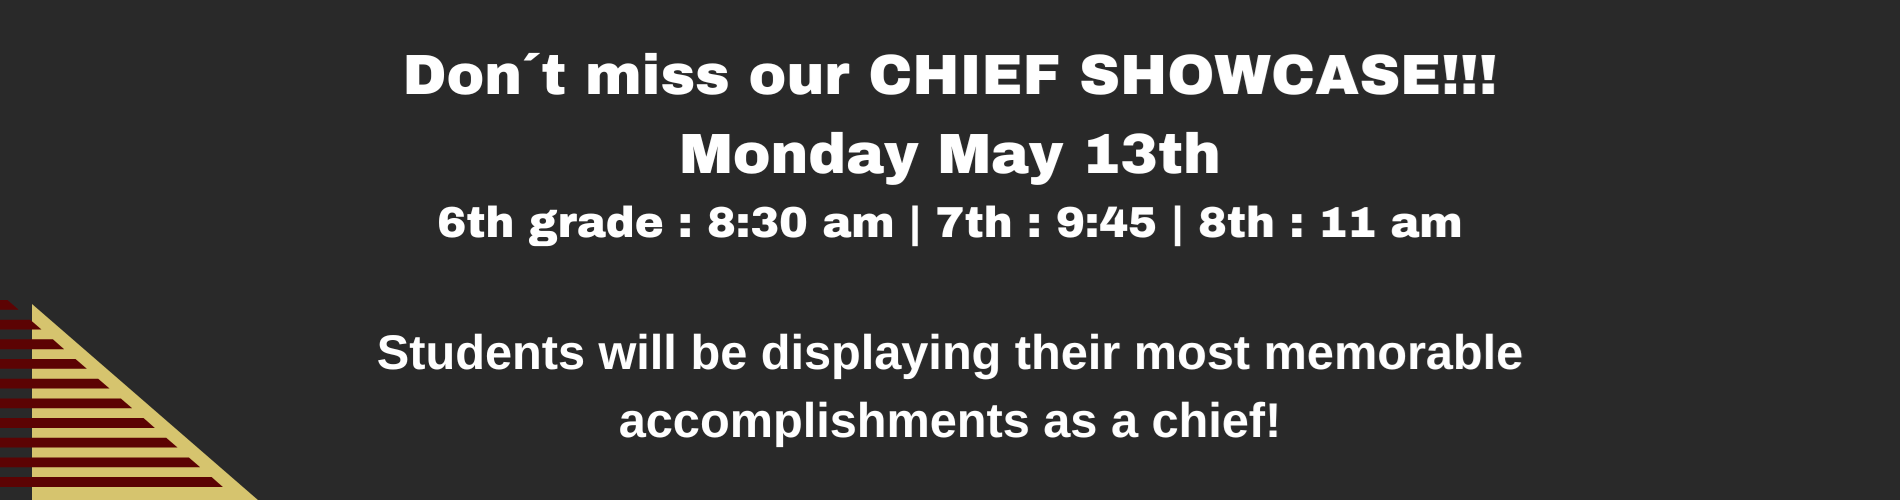 chief showcase reminder 